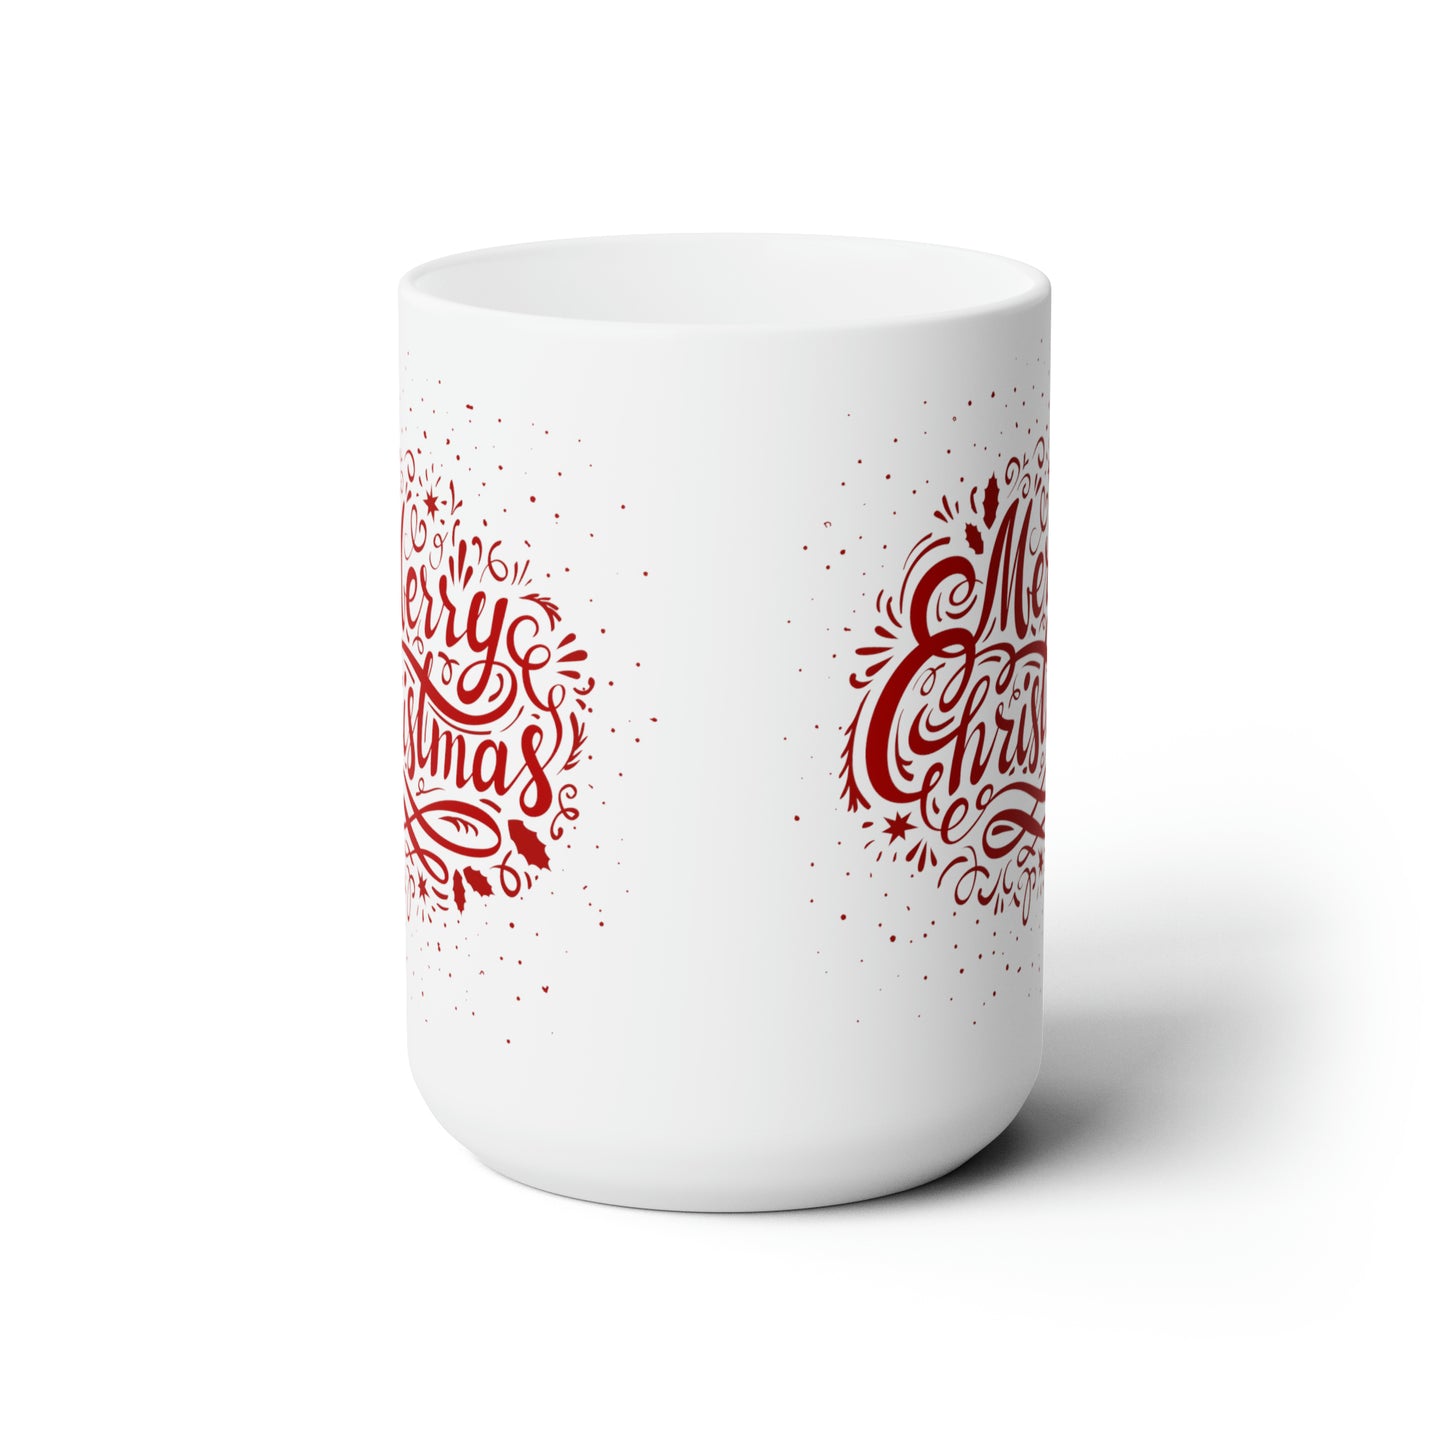 Merry Christmas Printed Ceramic Mug, 15oz